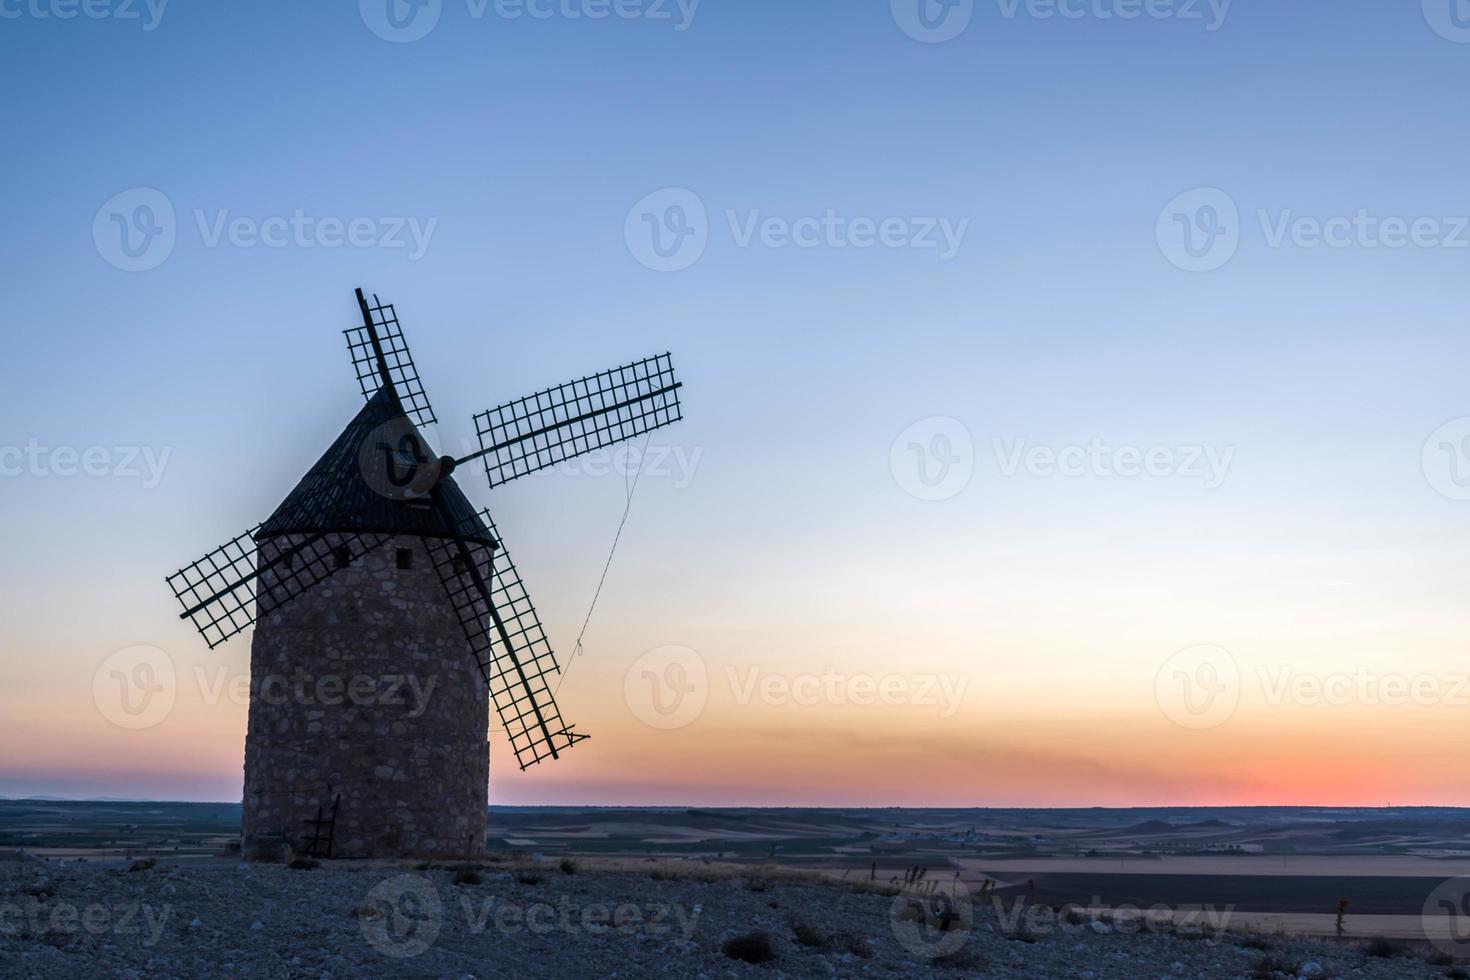 ancien moulin à vent au coucher du soleil photo